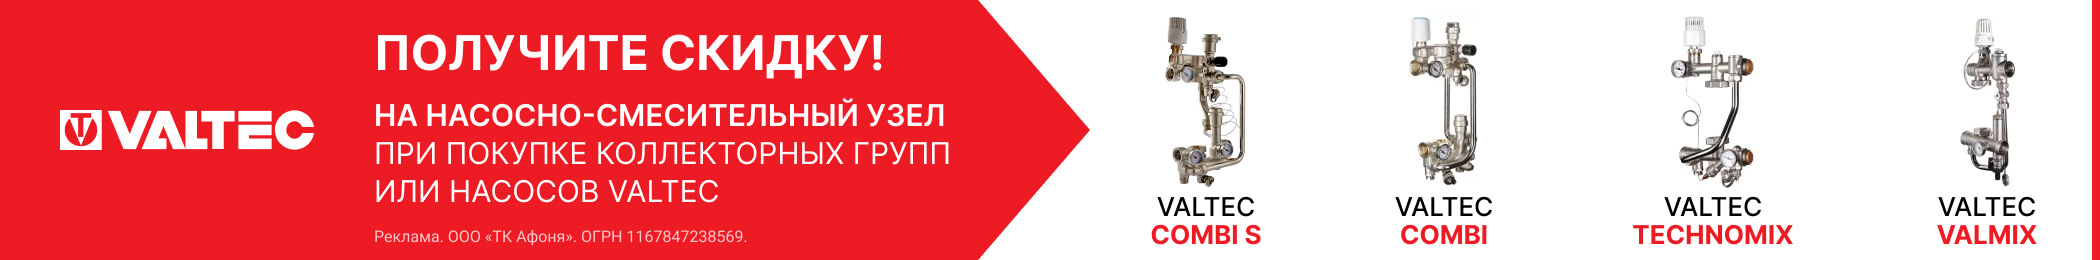 Акция на насосно-смесительные узлы для тёплых полов VALTEC при покупке коллекторных групп или насосов VALTEC